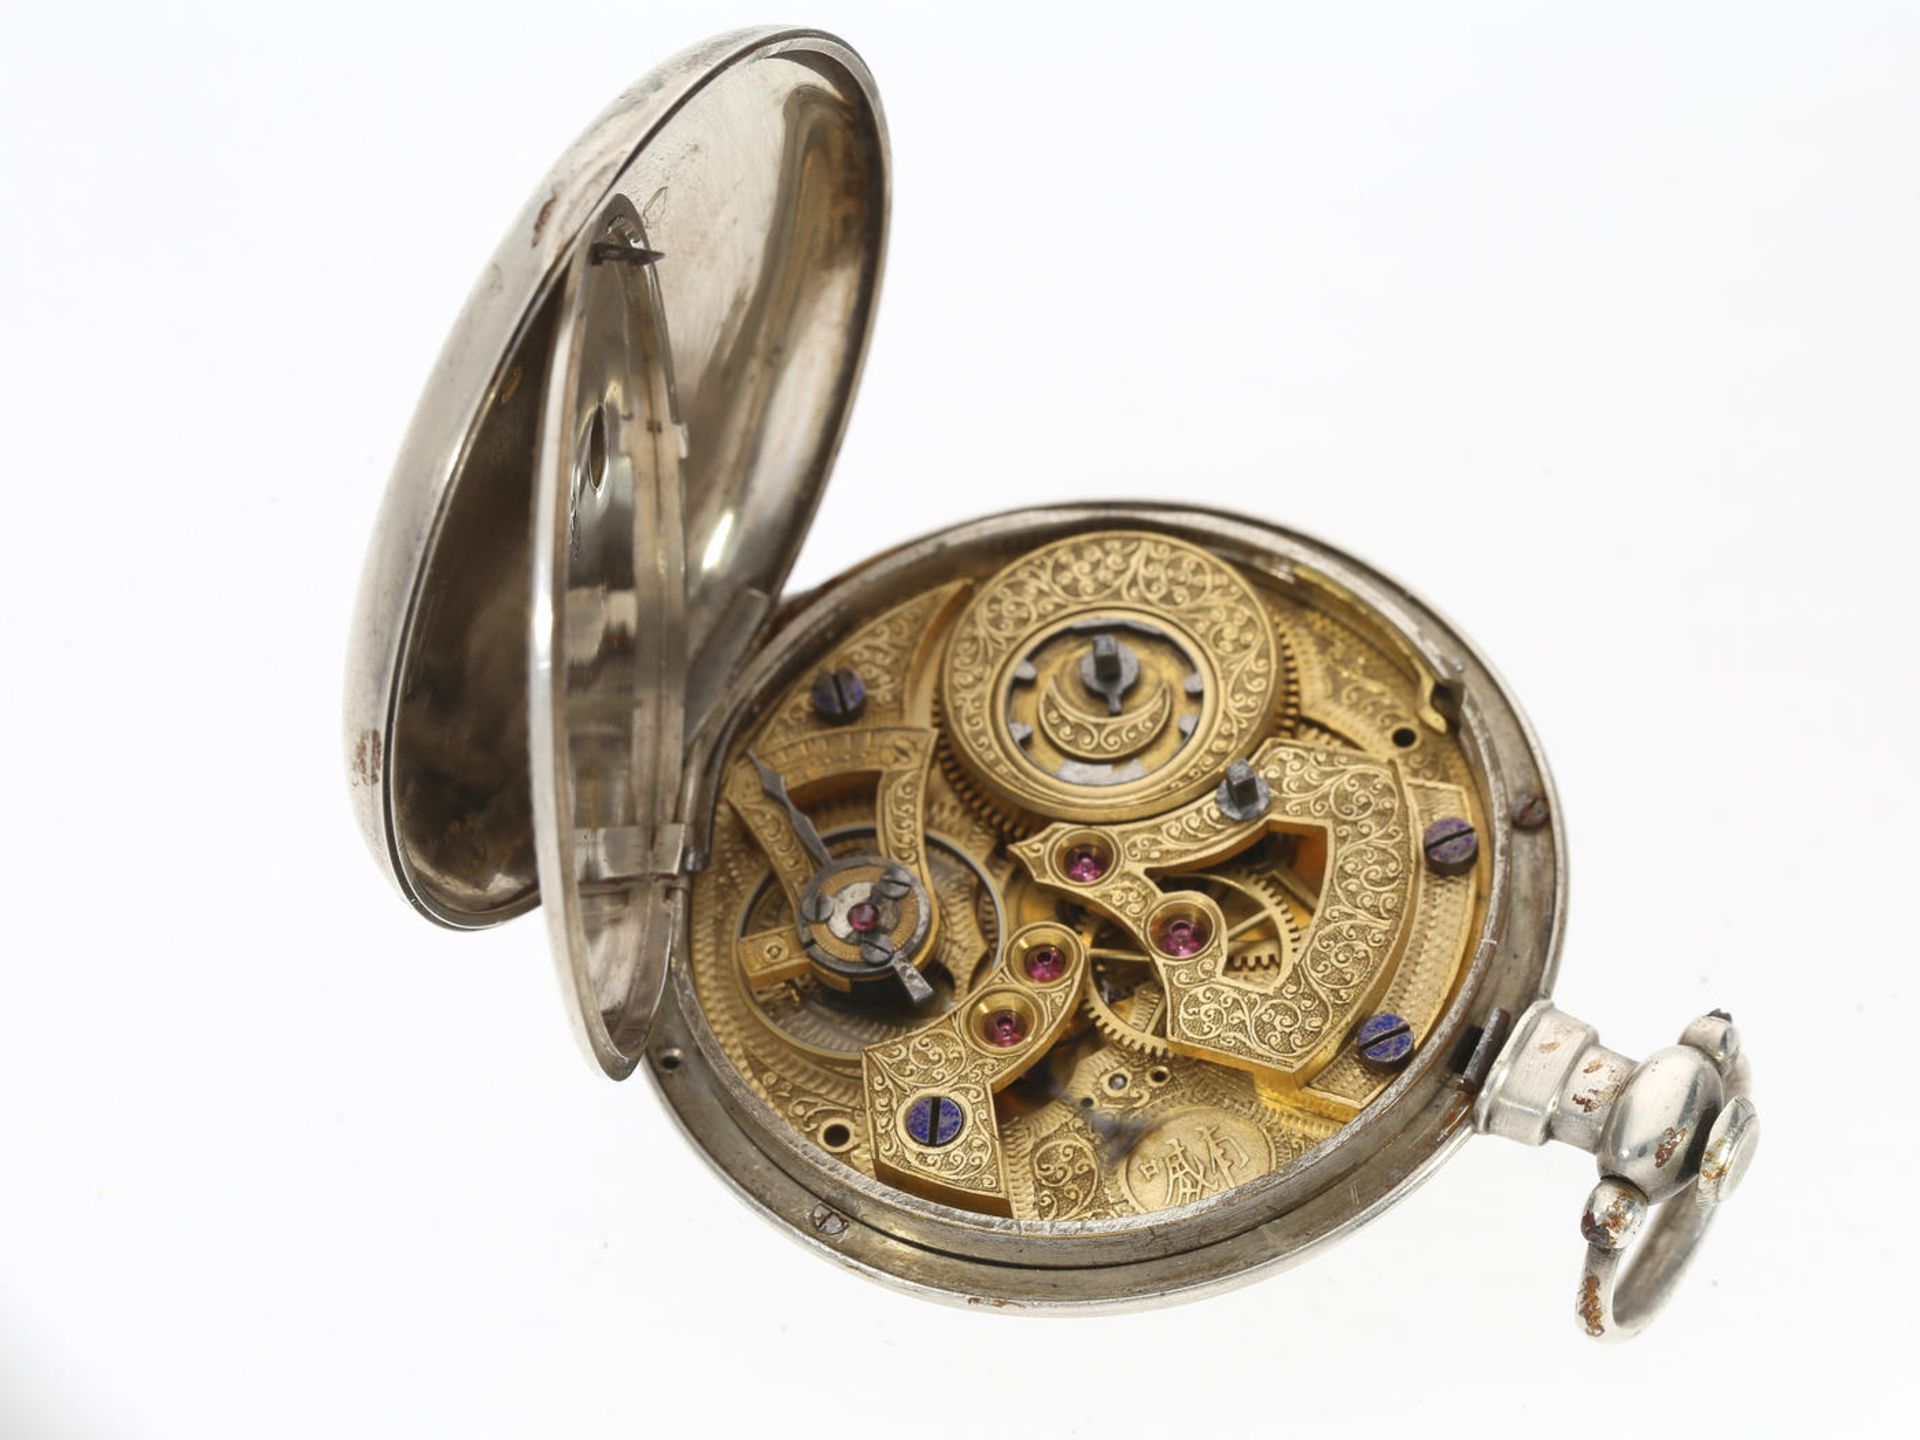 Taschenuhr: seltene Taschenuhr für den chinesischen Markt mit Prunkwerk, Fleurier um 1850 Ca. Ø56mm, - Image 2 of 3